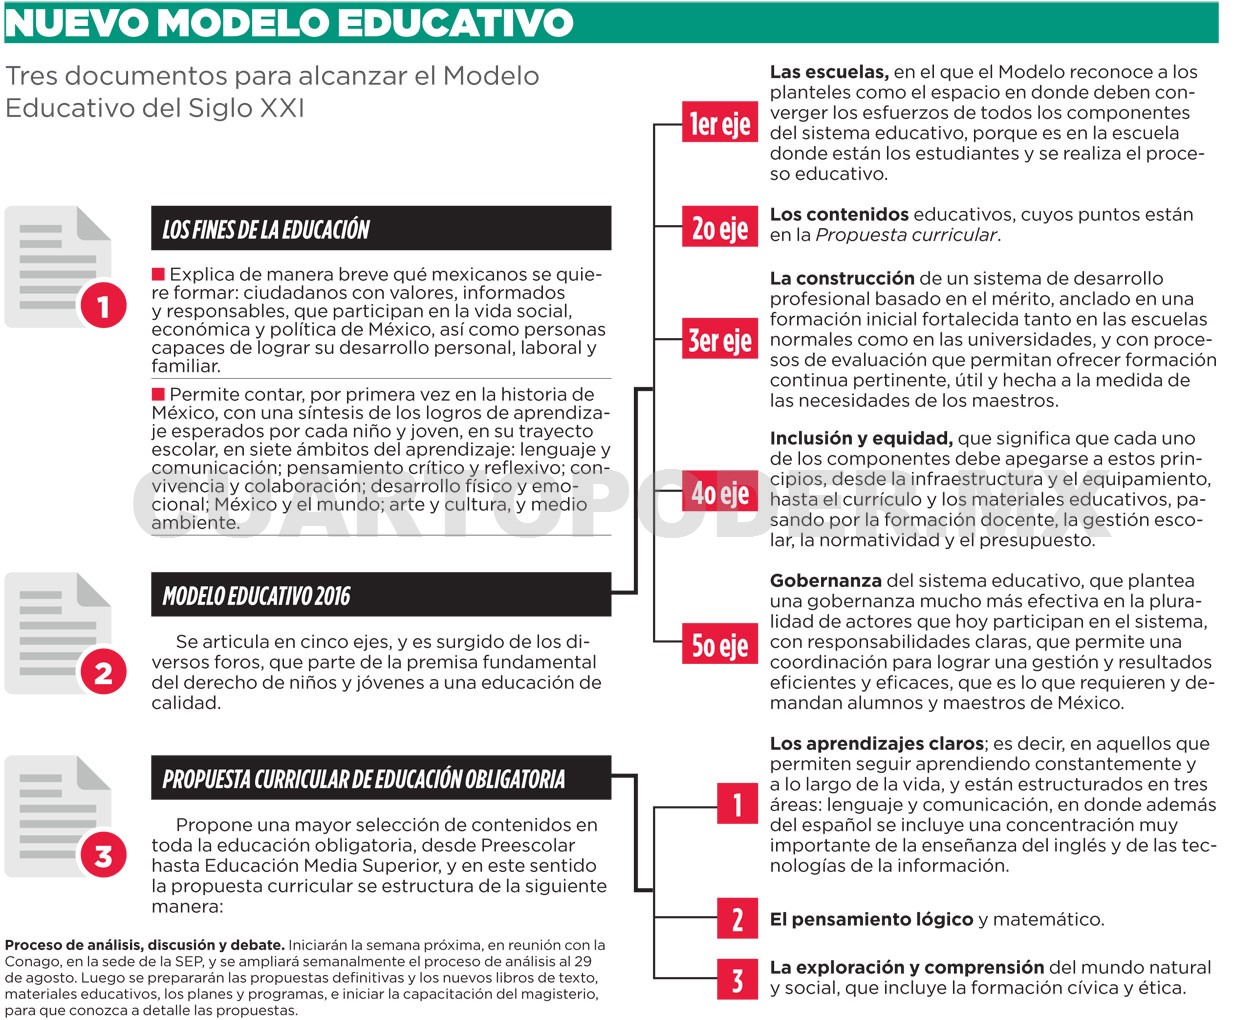 Proponen nuevo Modelo Educativo Nacional